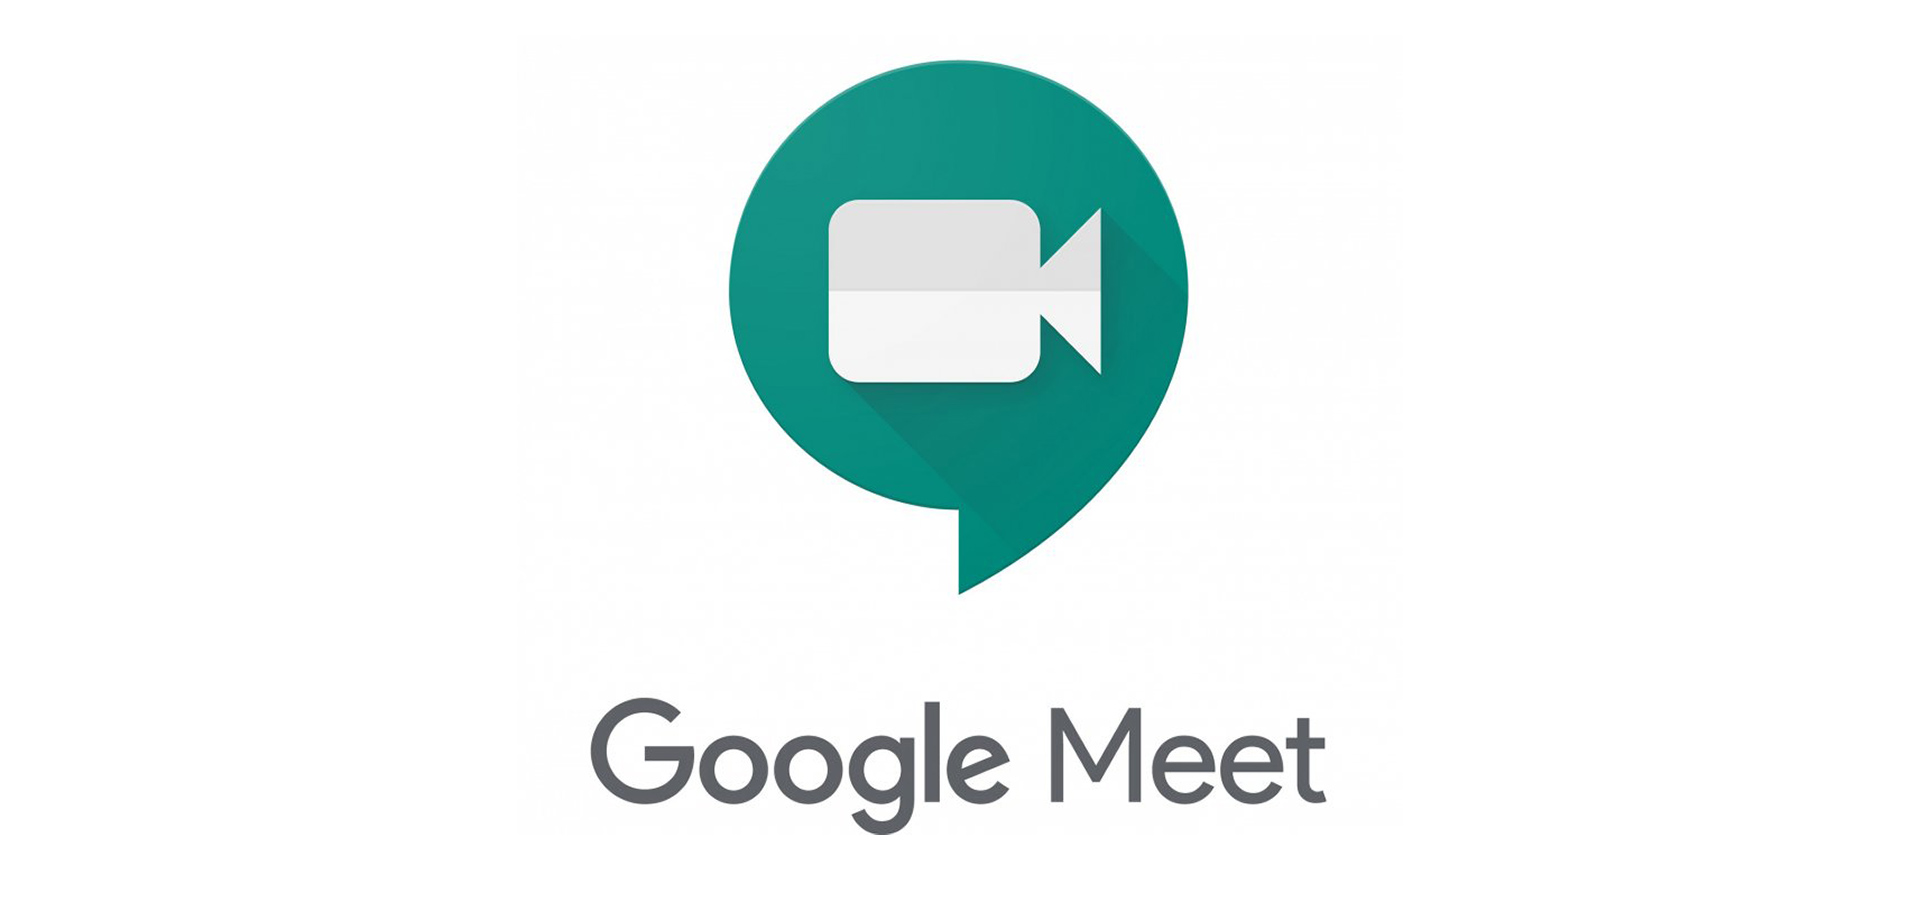 Google Meet Chrome Extensions